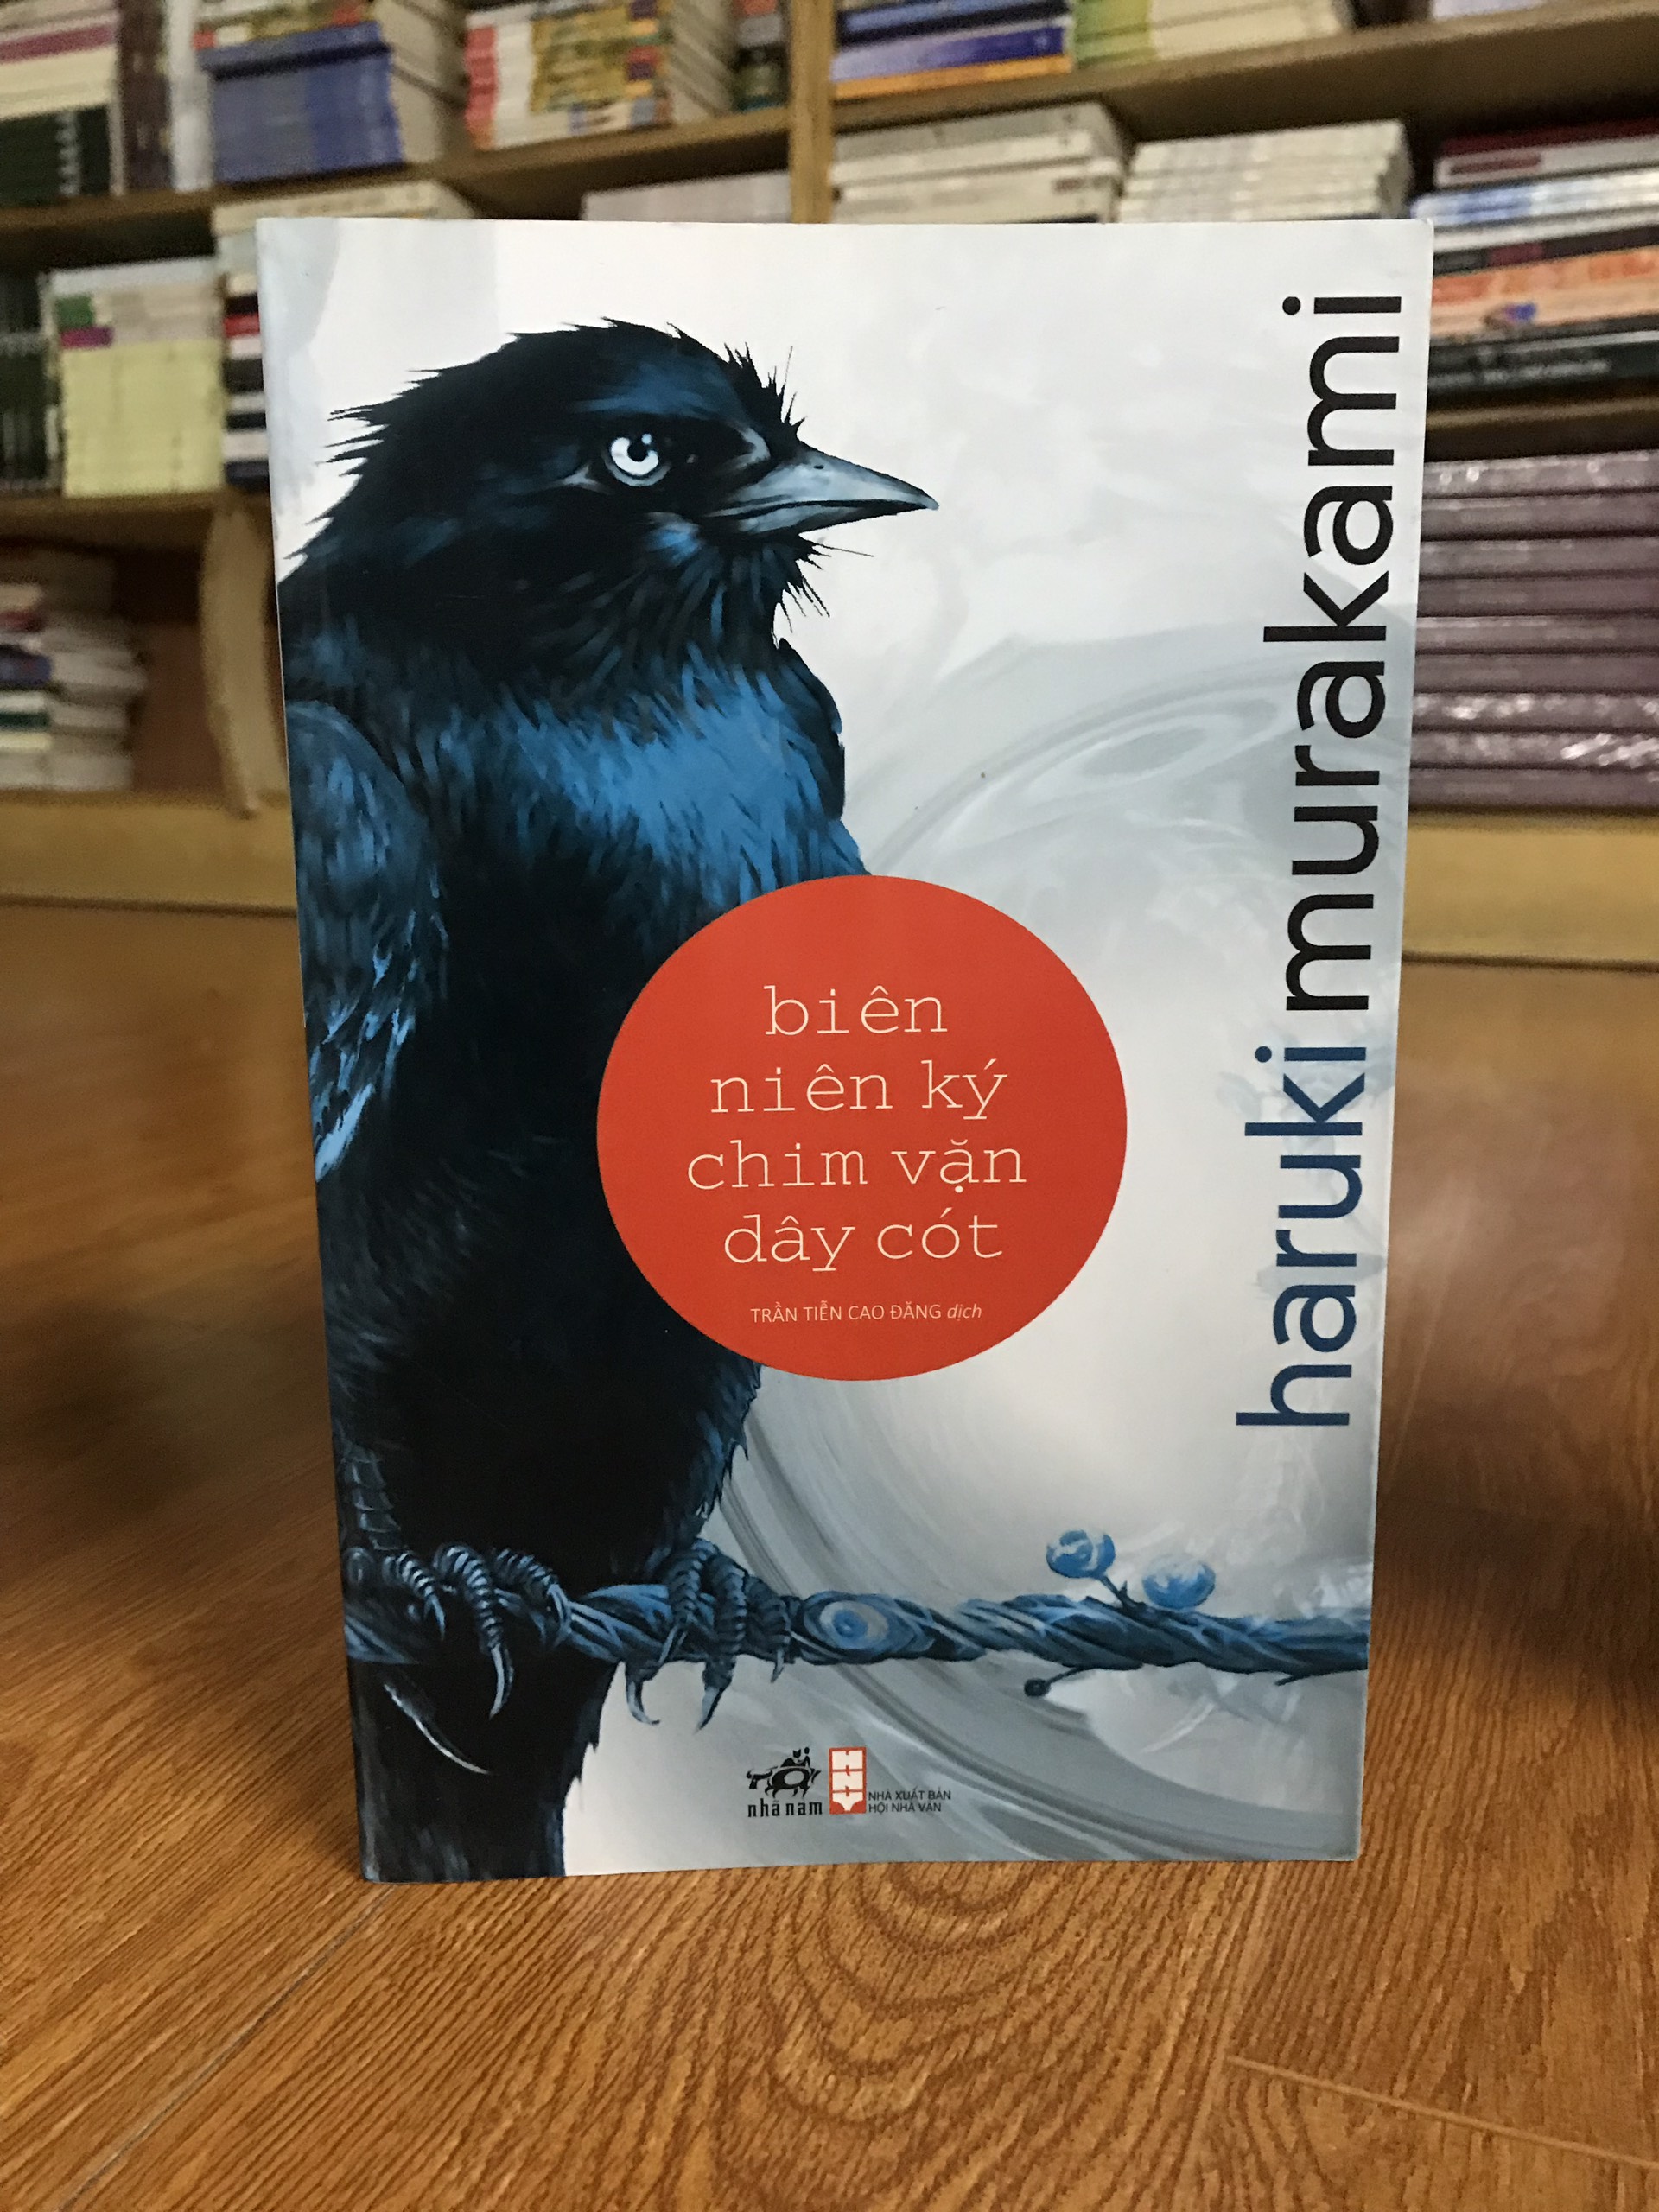 Hình ảnh Combo sách của Haruki Murakami: Rừng Nauy + Biên Niên Ký Chim Vặn Dây Cót + Nhảy Nhảy Nhảy + Phía Nam Biên Giới, Phía Tây Mặt Trời